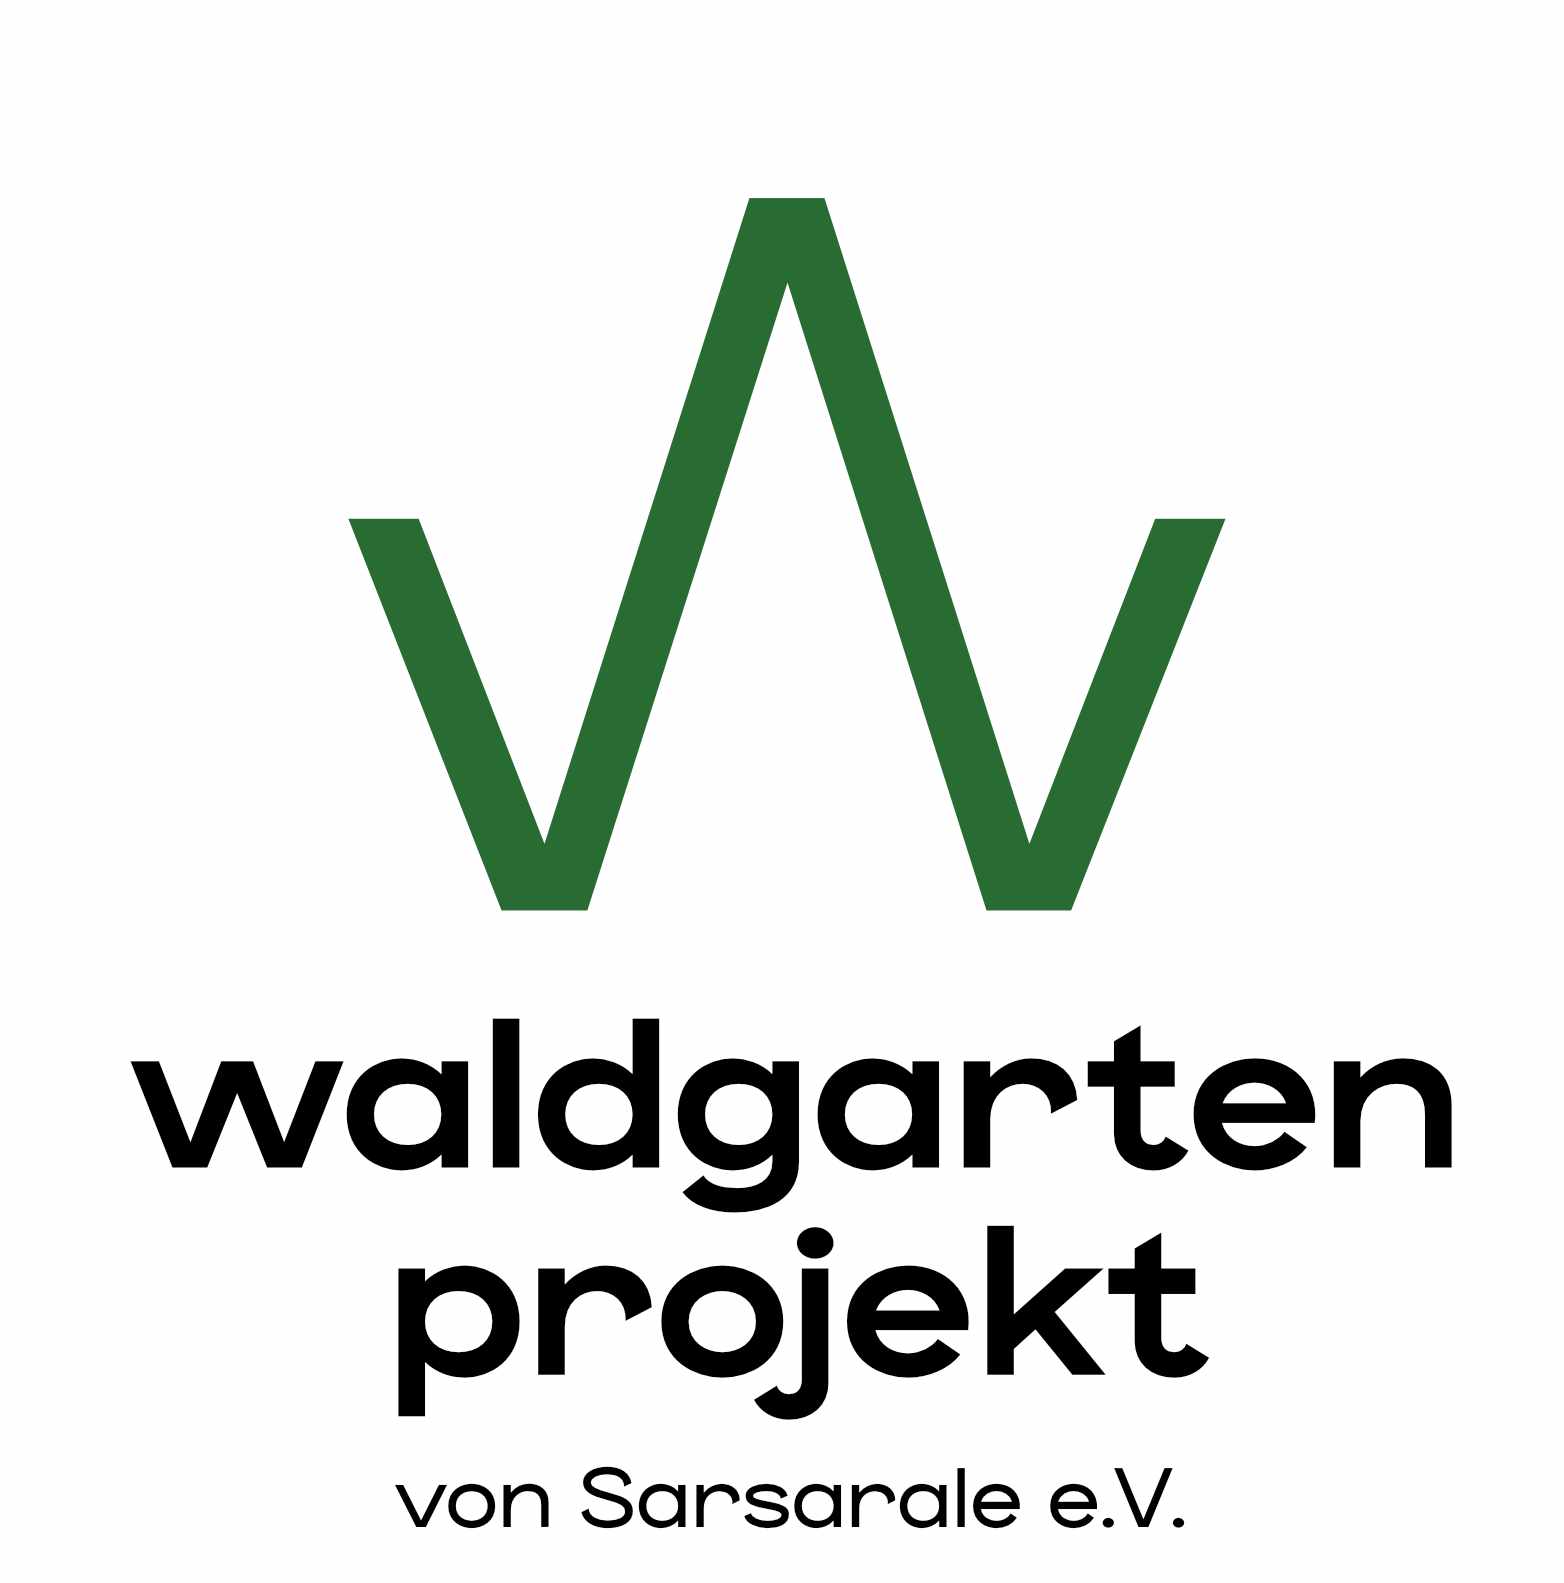 Waldgartenprojekt